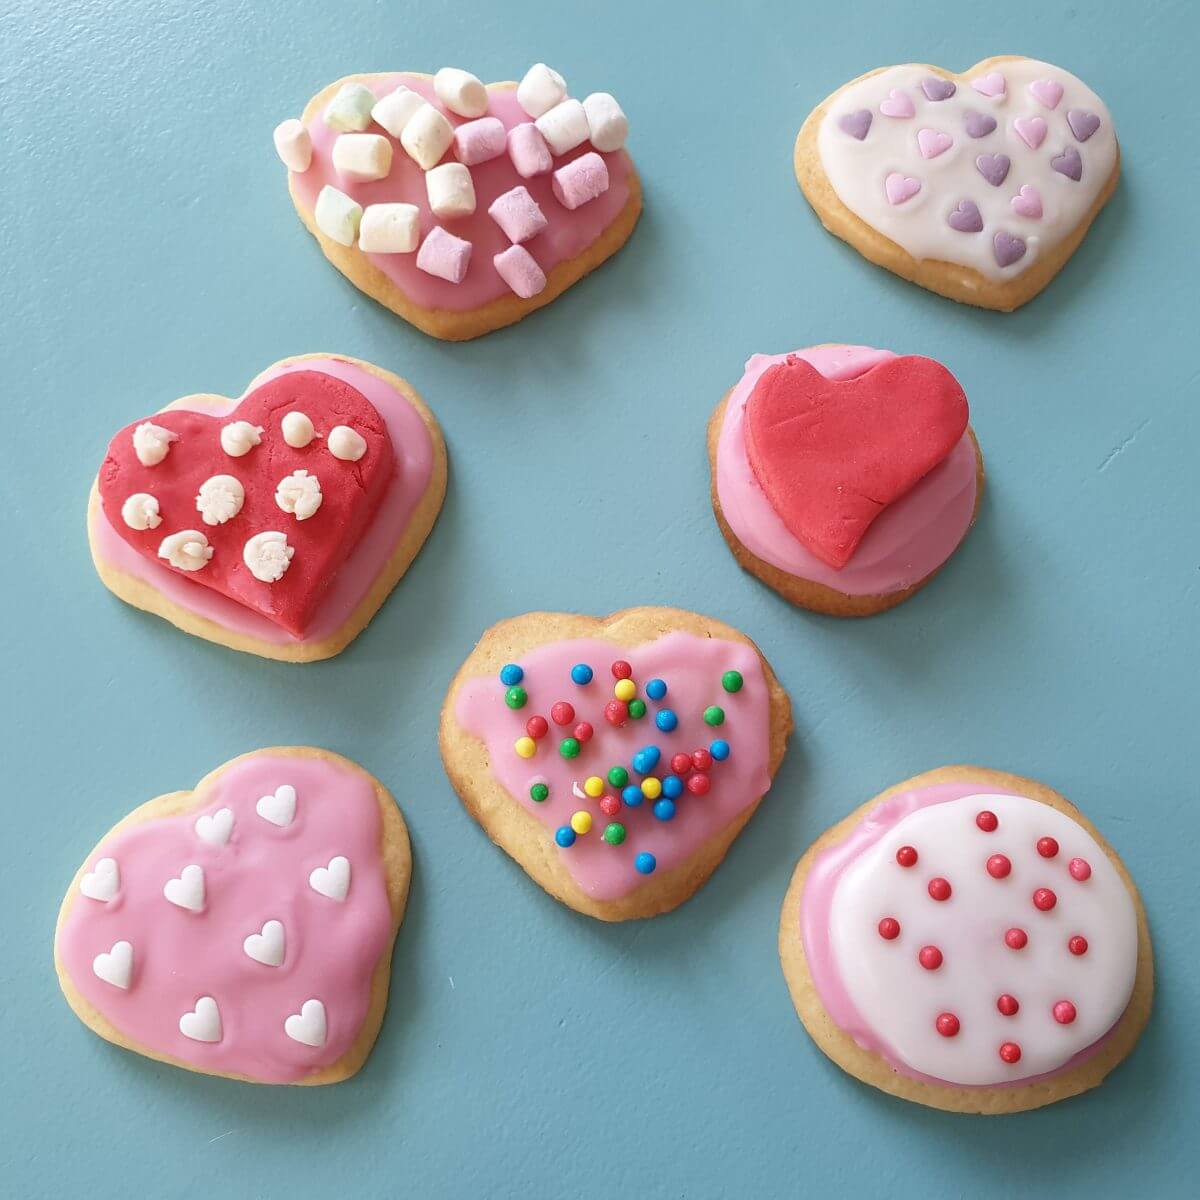 Koekjes bakken voor Valentijnsdag. De kinderen zijn altijd op zoek naar een smoes om koekjes te bakken en te versieren. Dit keer was de smoes Valentijnsdag, een perfecte reden voor het bakken van koekjes! Natuurlijk in de vorm van vrolijk versierde rode en roze koekjes. 